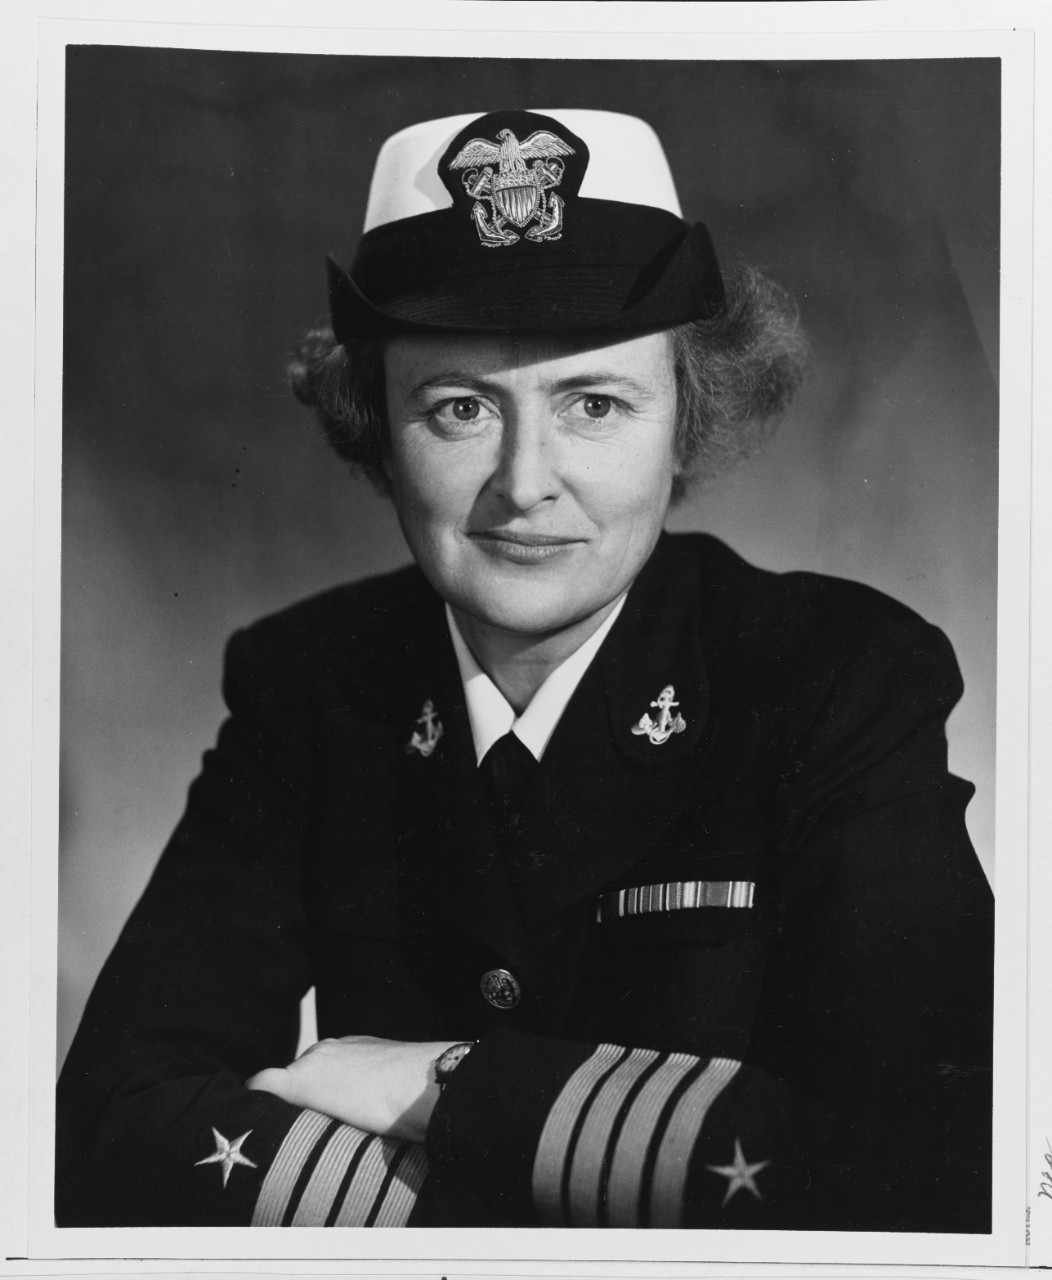 Captain Jean Palmer, USNR